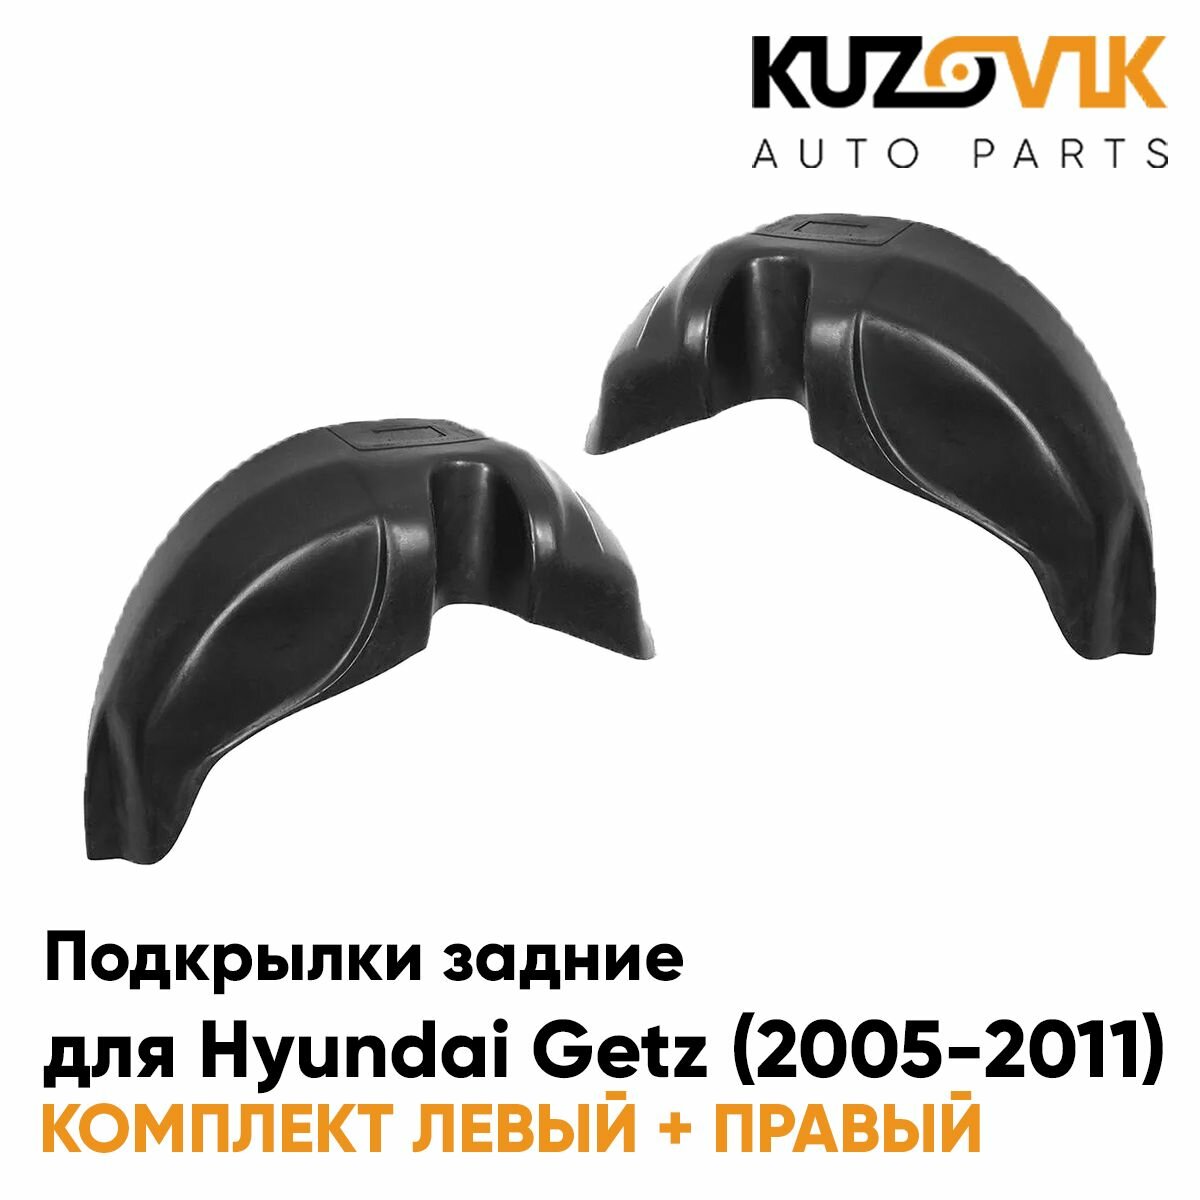 Подкрылки задние Hyundai Getz (2005-2011) на всю арку комплект 2 шт левый + правый